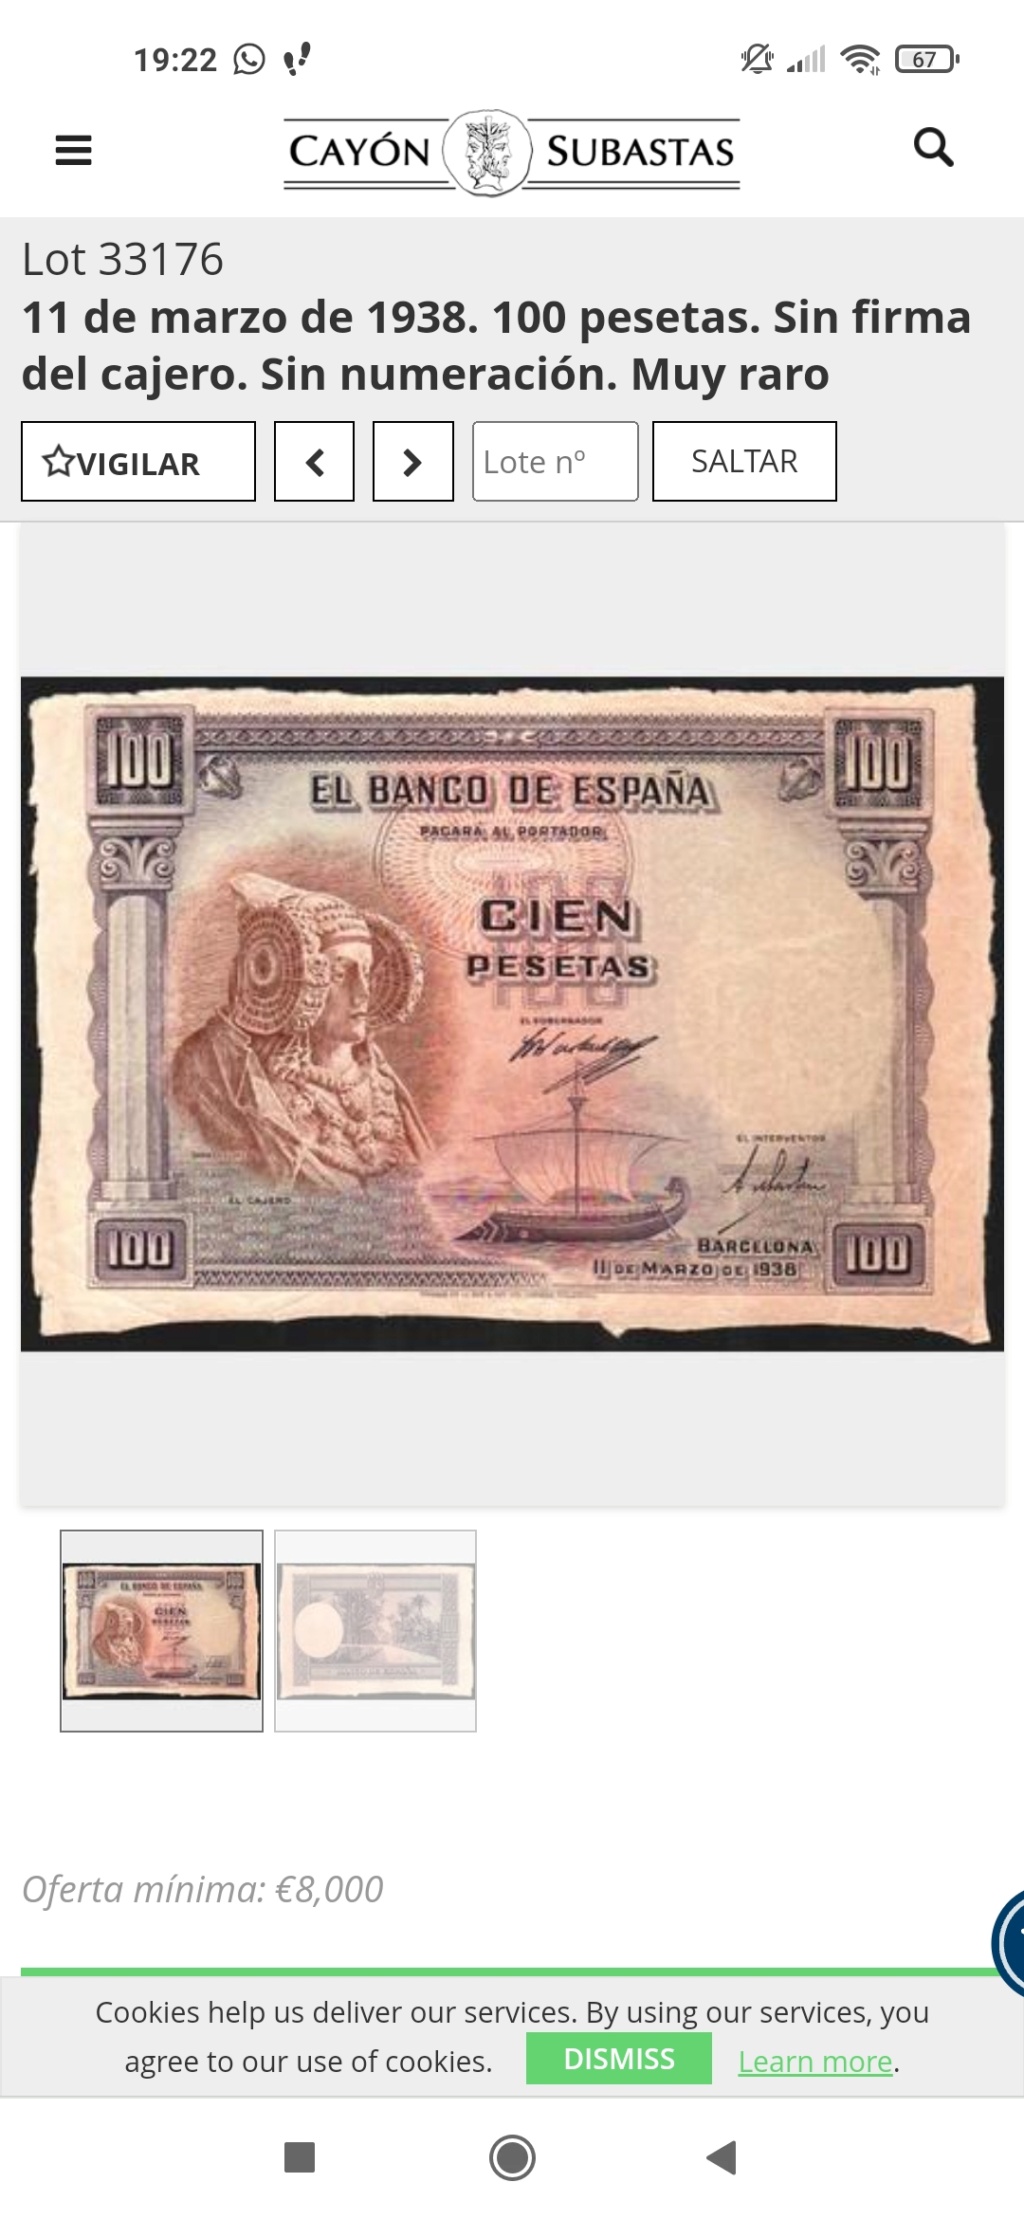 Sobre billetes de 100 pesetas de 1938 Dama de Elche subasta Cayón Screen73